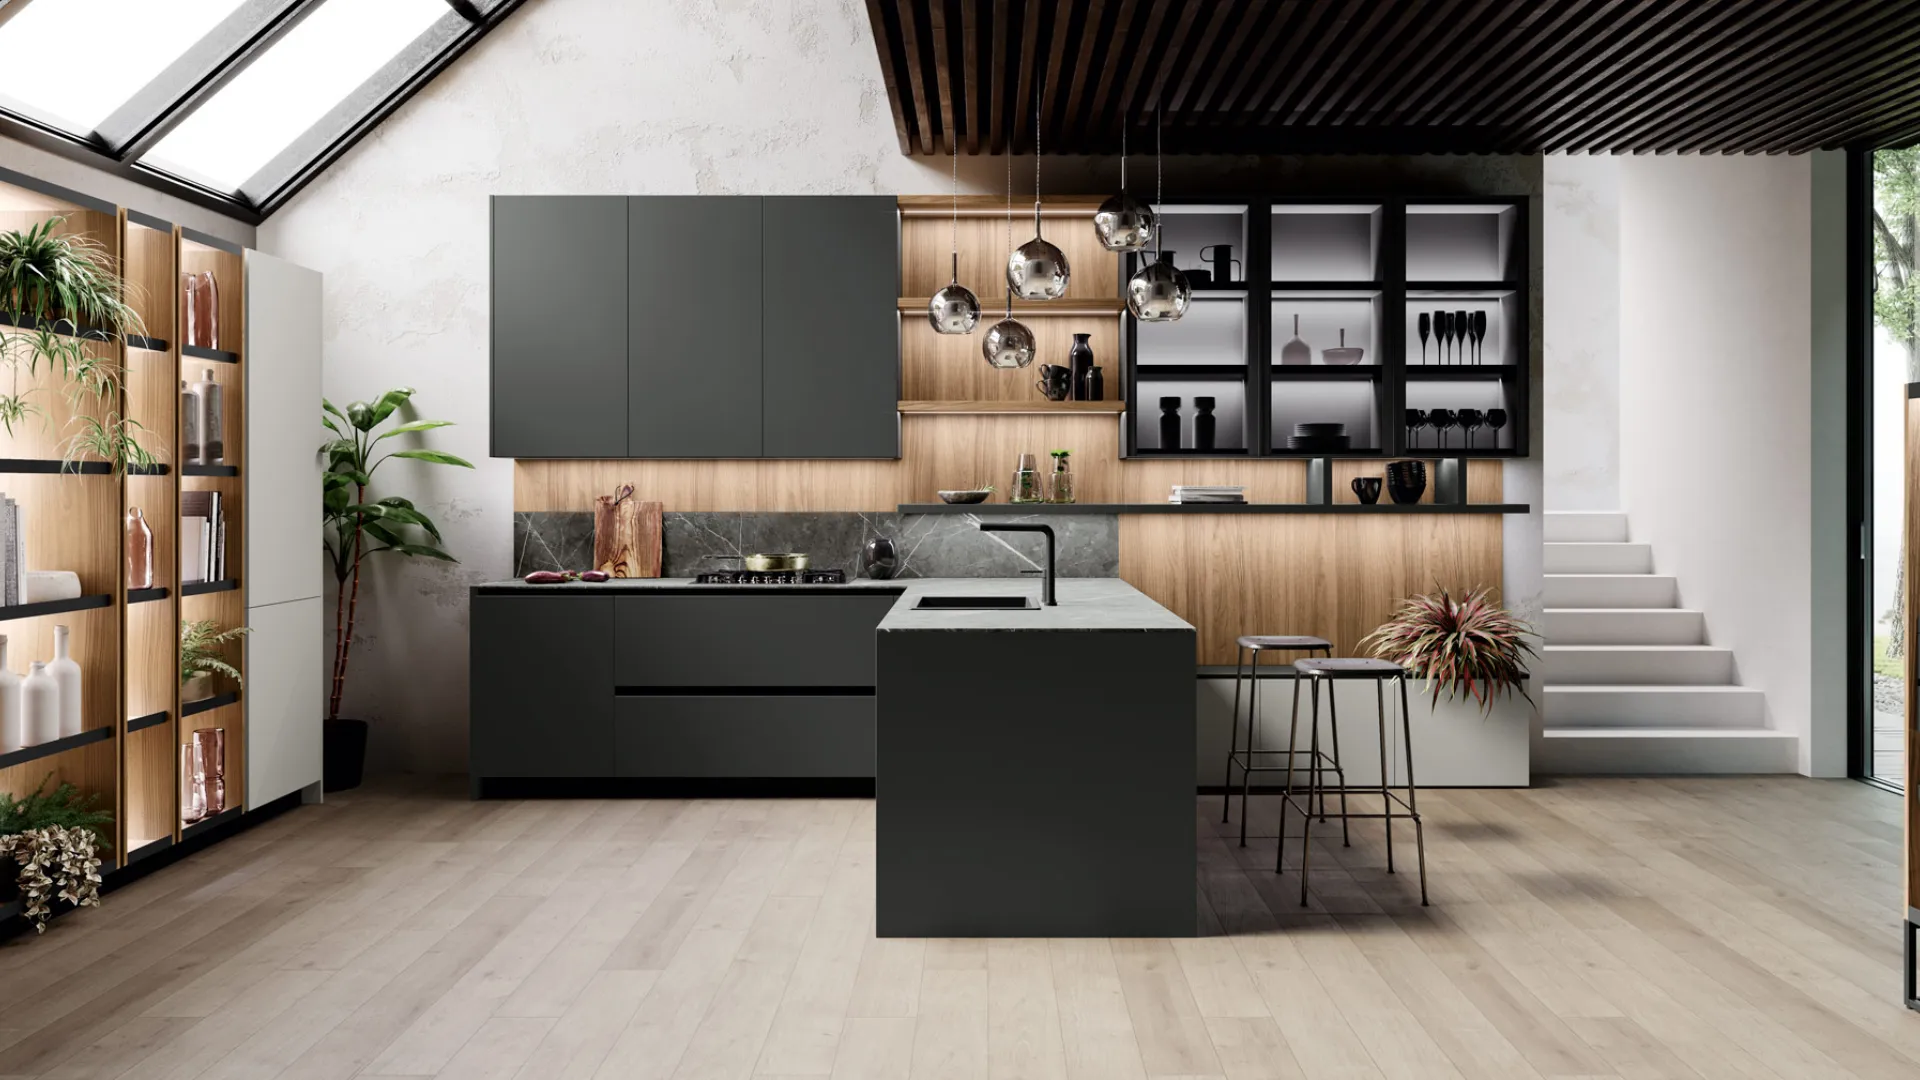 Menta model kitchen by Miton